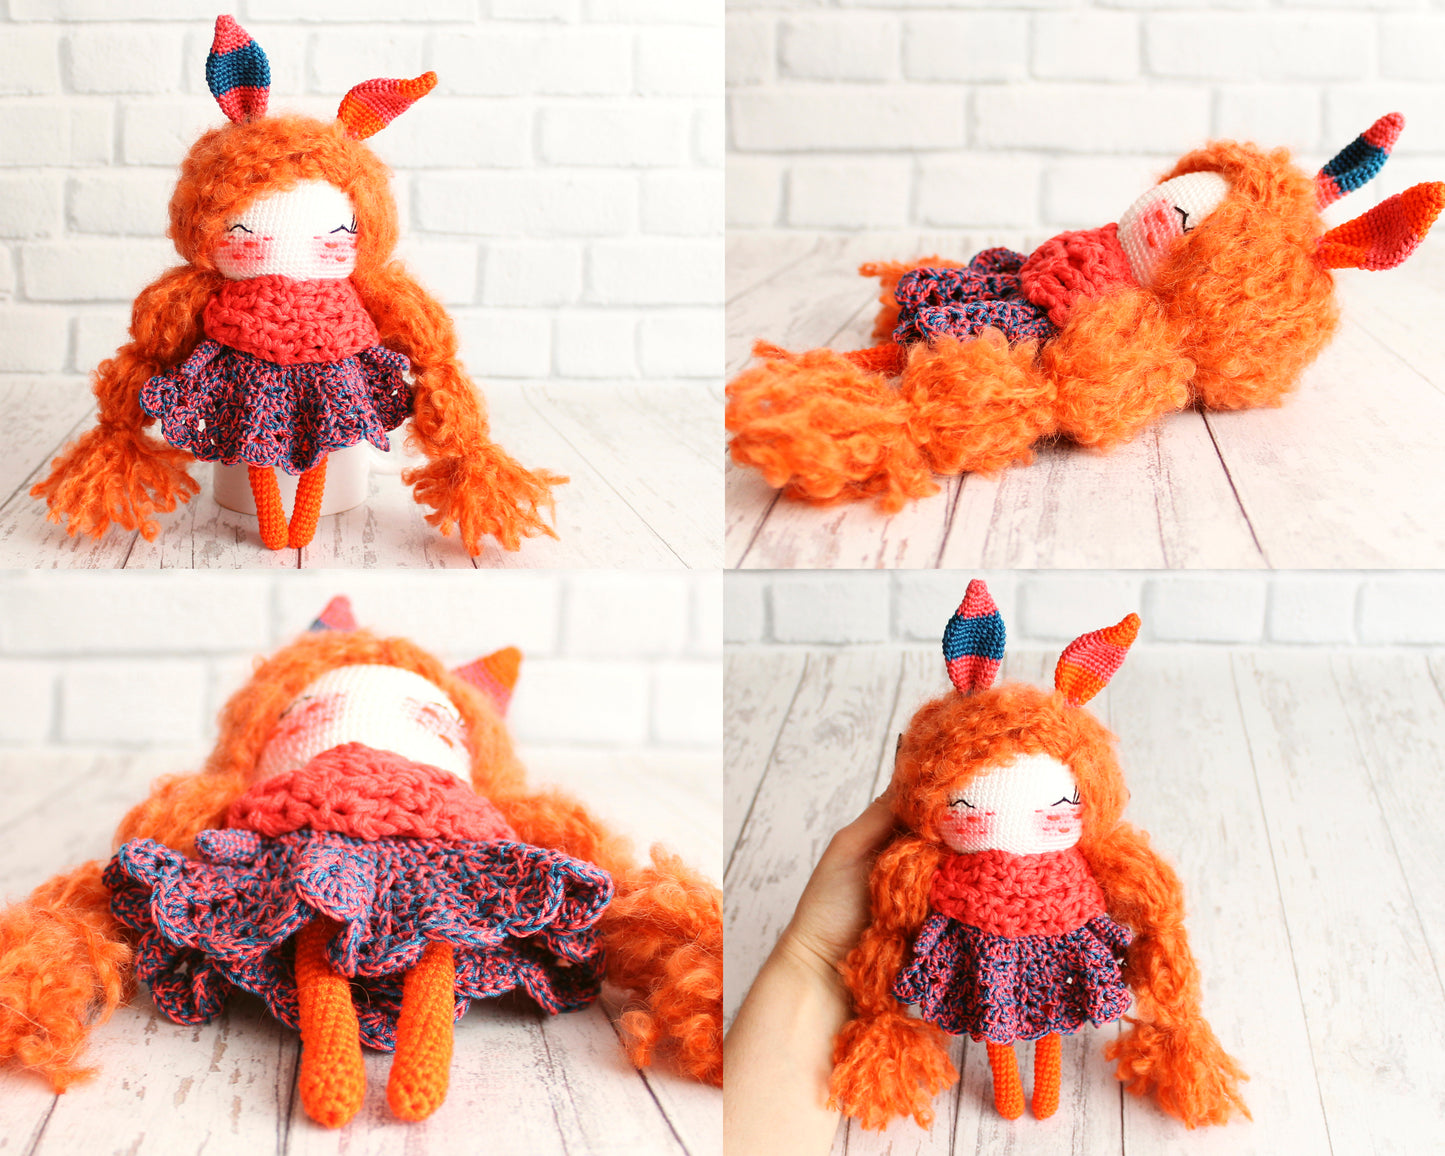 PDF PATTERN Crochet Little Bunny Doll, Crochet Amigurumi Rabbit, Crochet Dolls Pattern, DIY Doll, Little Toy 20 cm / 7.8", Crochet Gift Idea